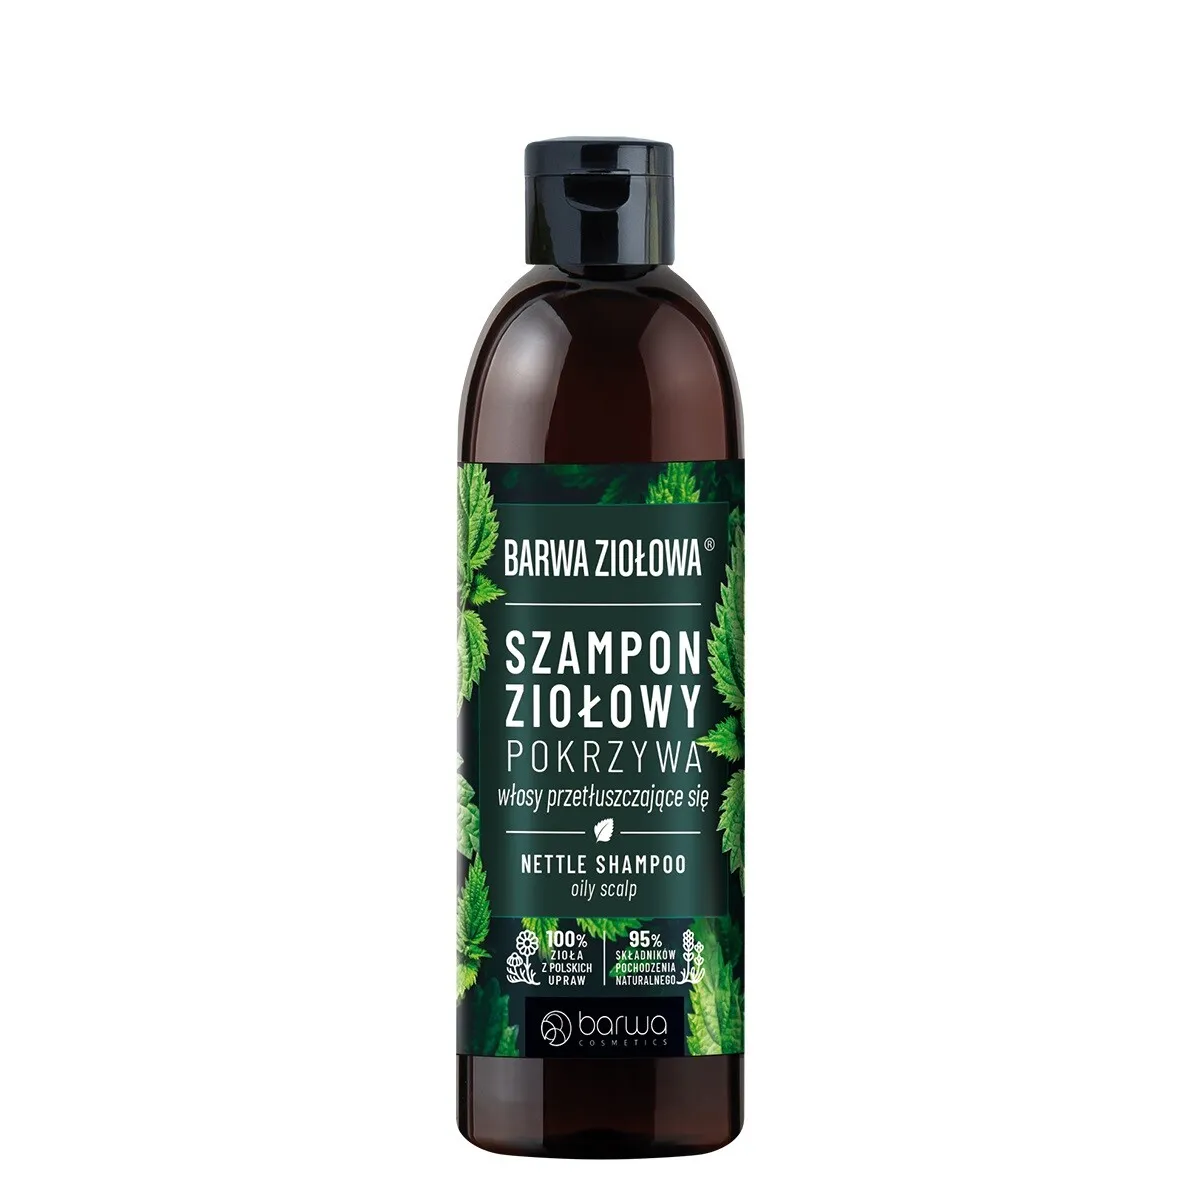 ziołowy szampon herbal care z pokrzywą